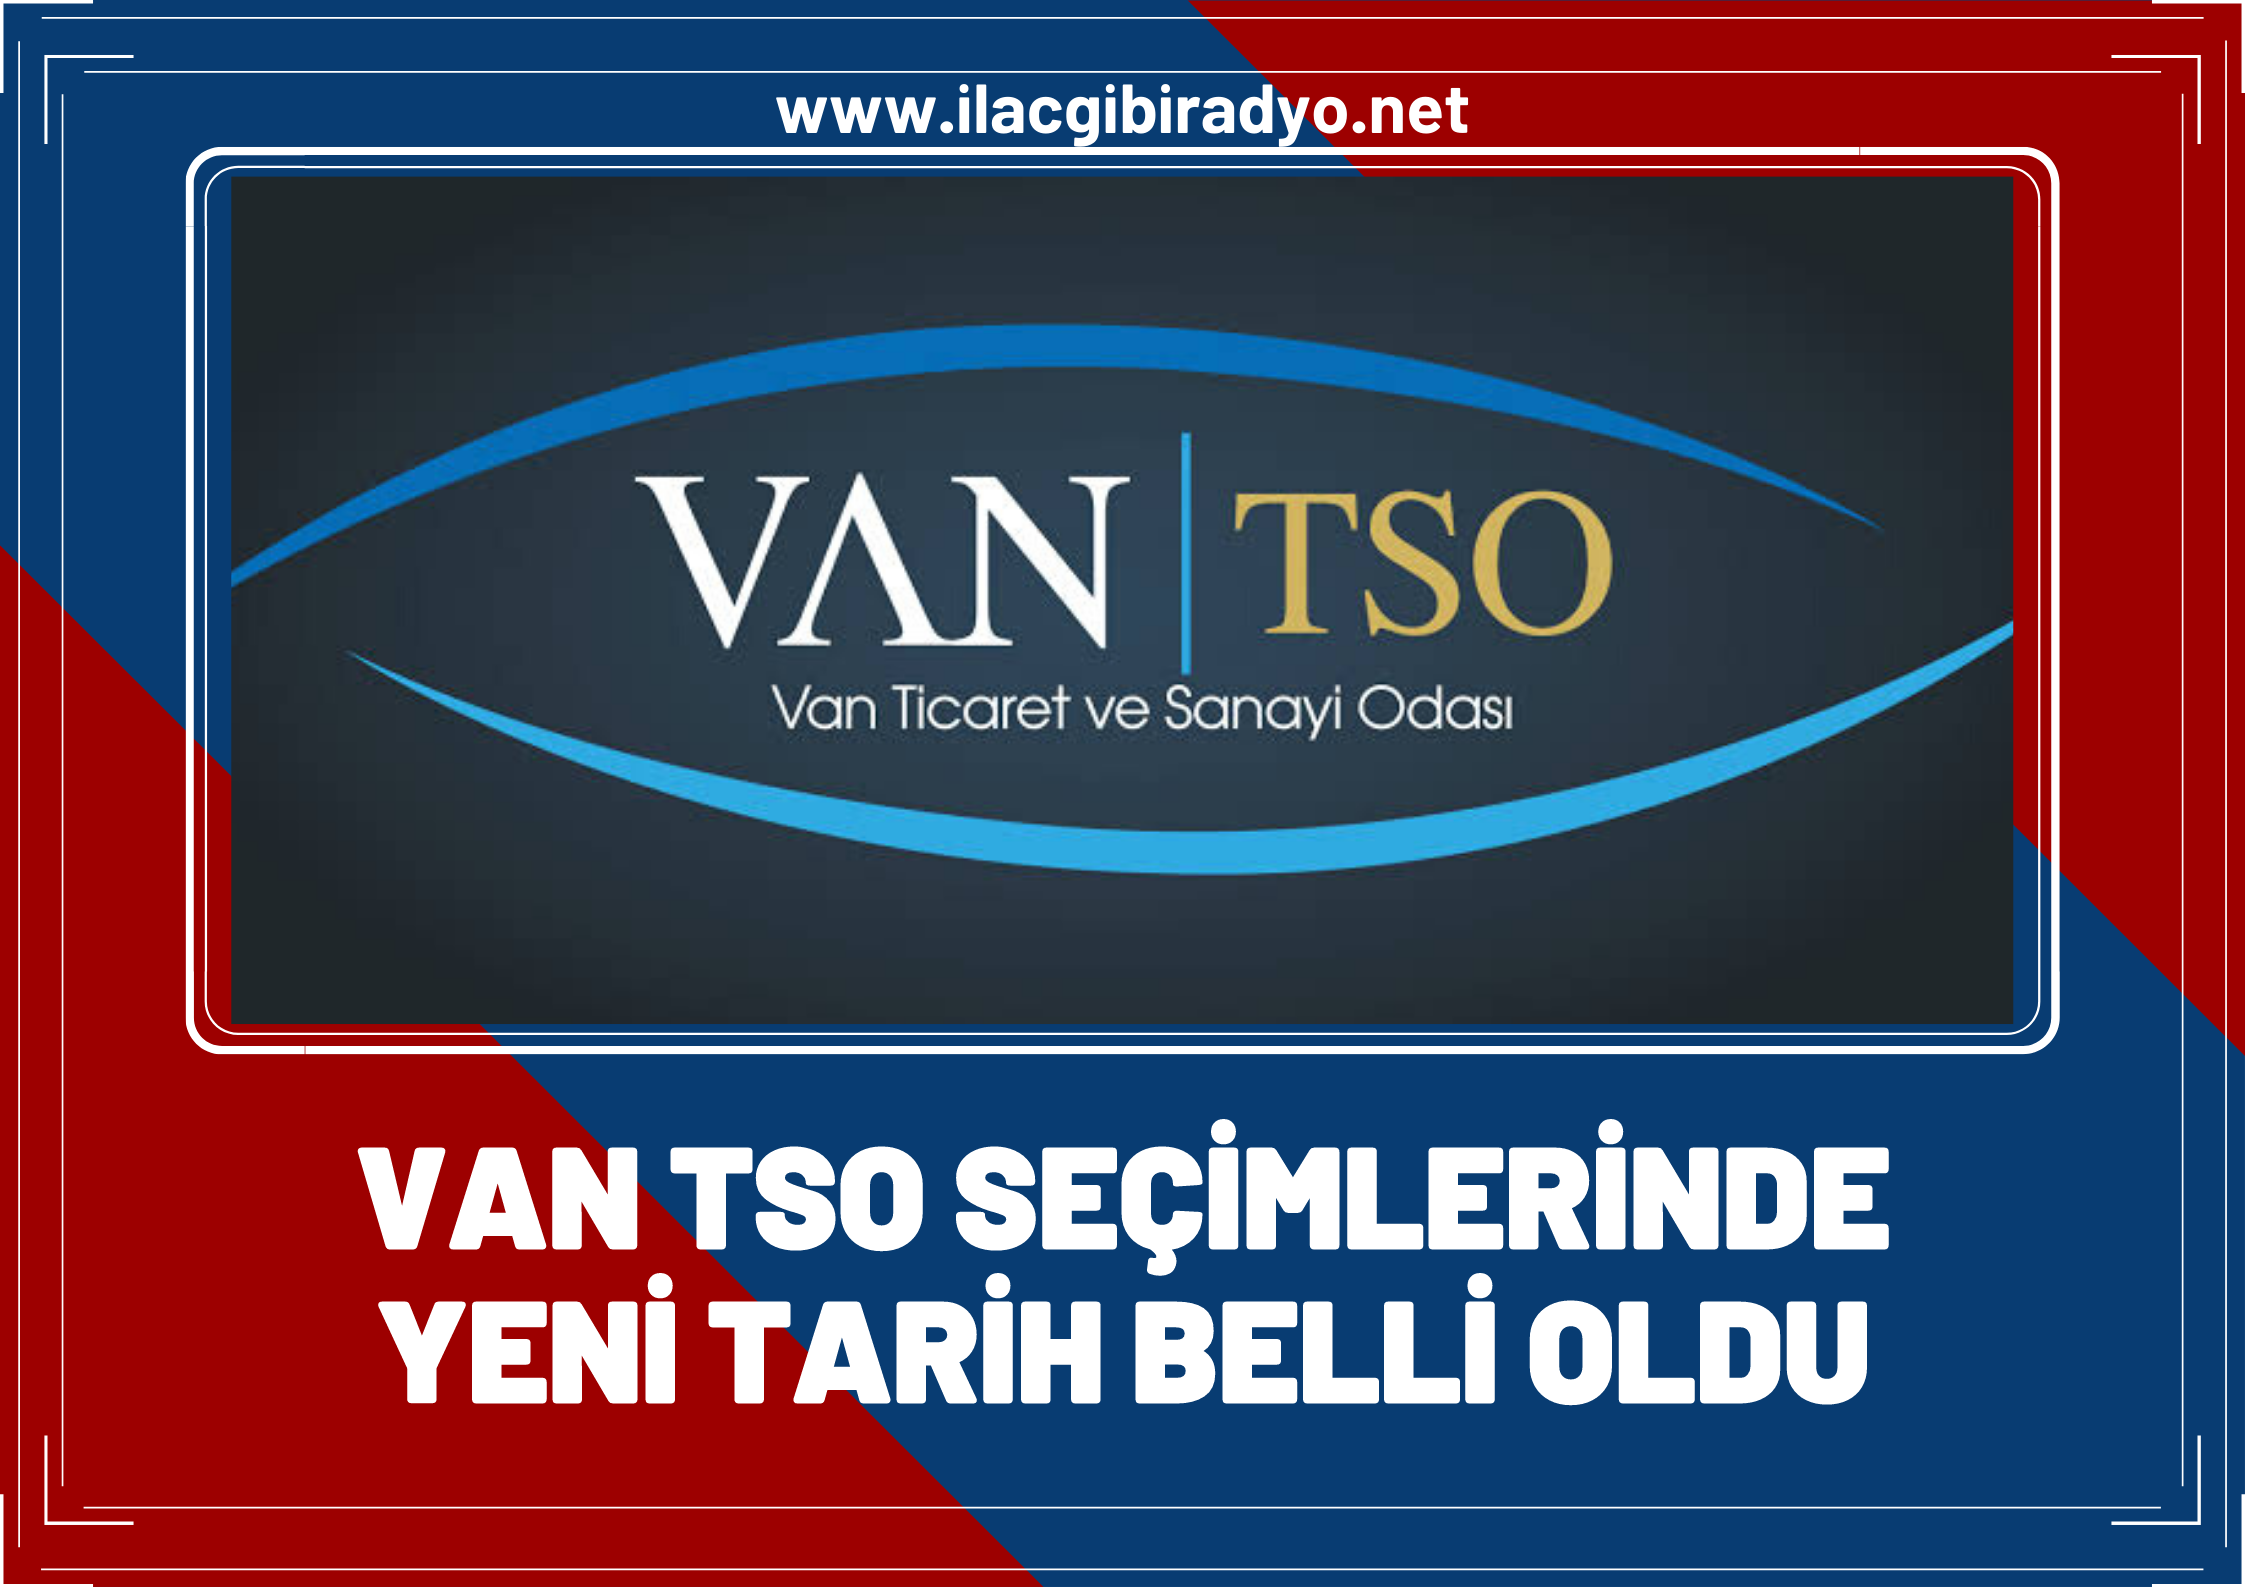 İkinci kez iptal edilen VAN TSO seçimlerinde yeni tarih belli oldu!